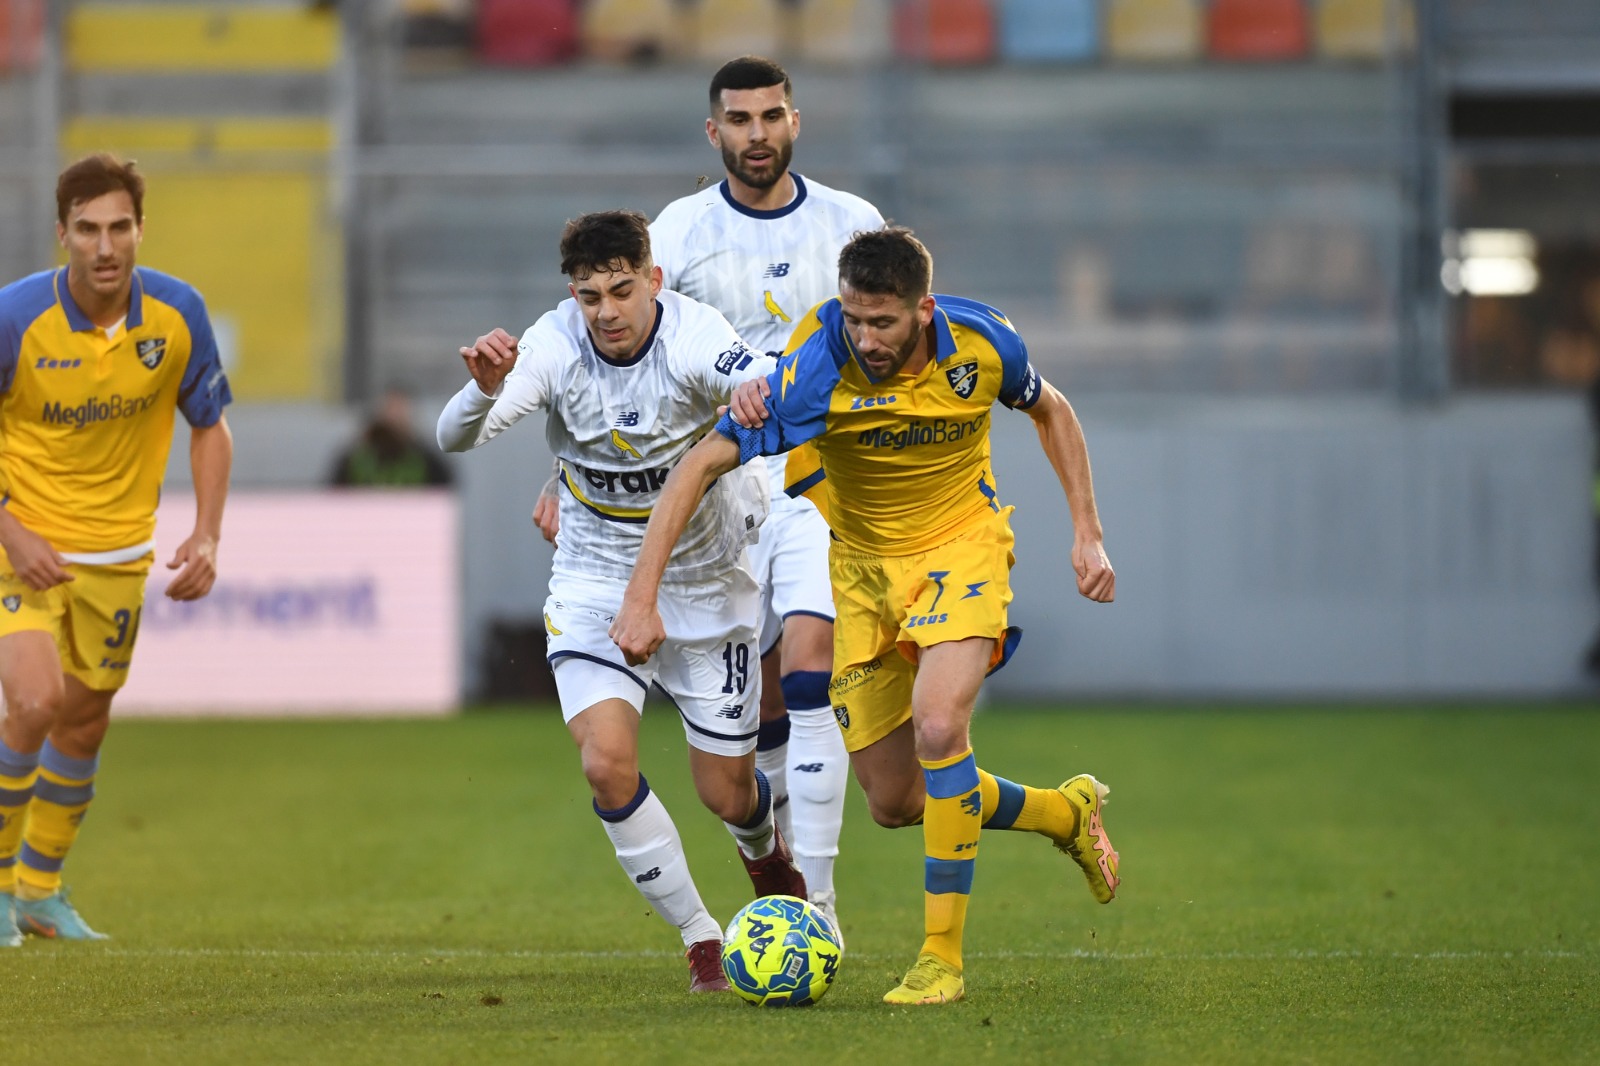 Modena-Cosenza 2-0: gol di Gerli e Giovannini - Modena FC